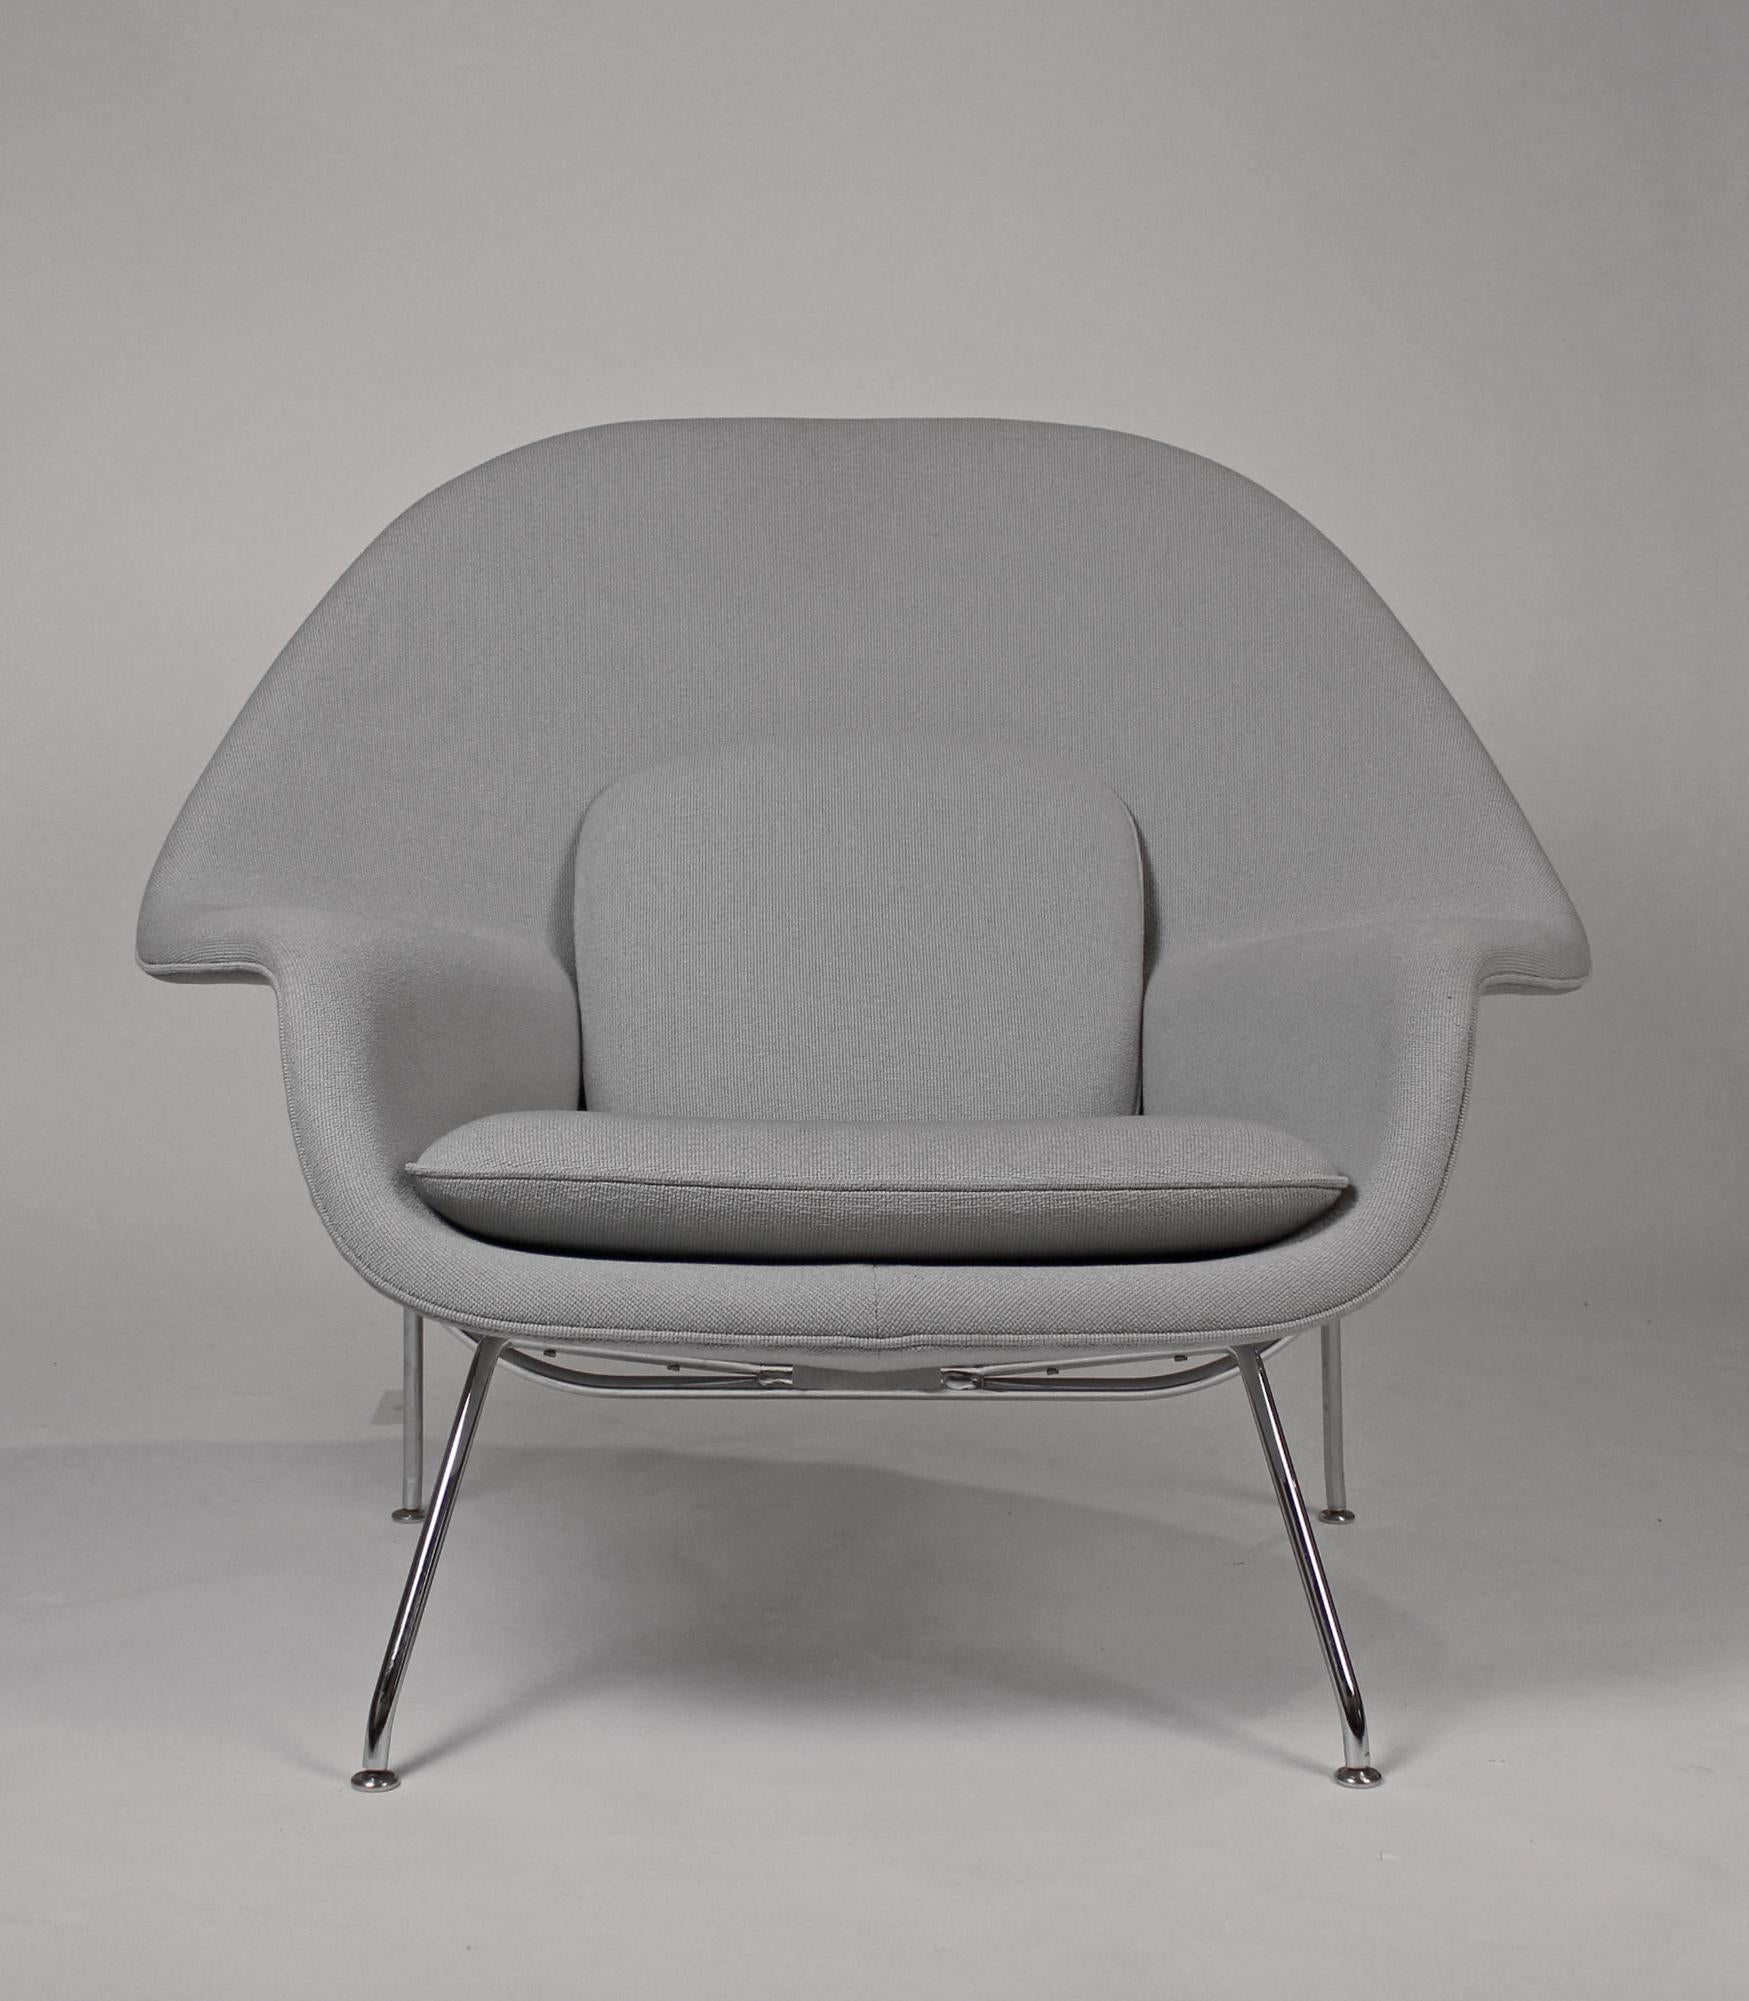 American Pair of Knoll Womb Chairs designed by Eero Saarinen